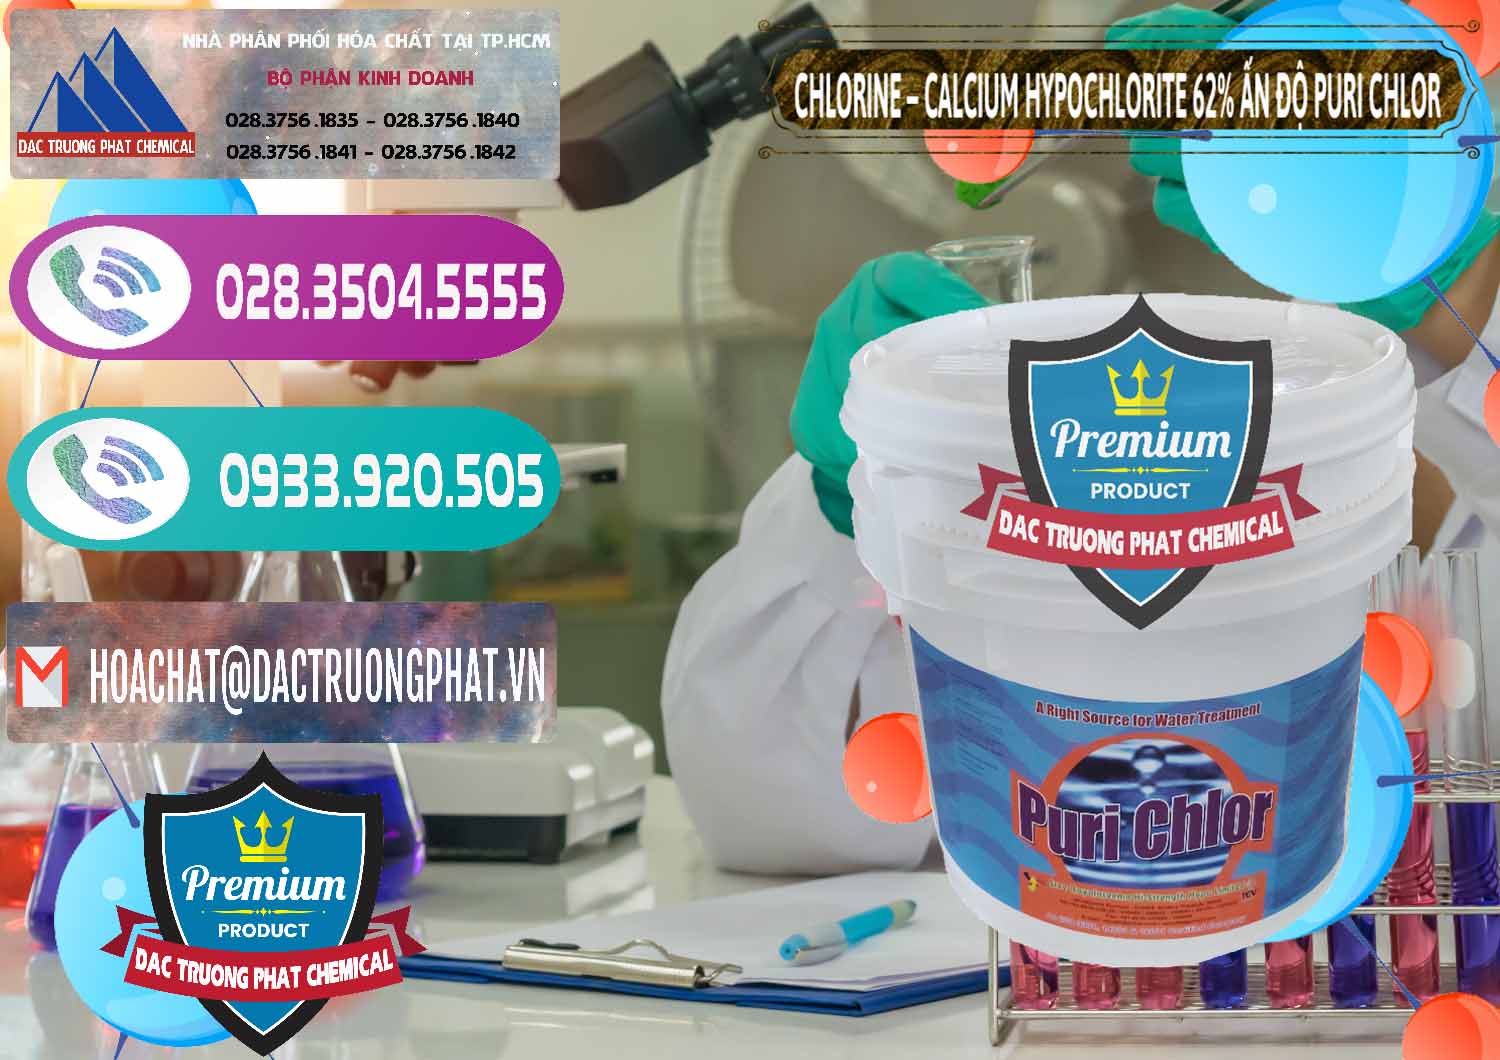 Bán & cung ứng Chlorine – Clorin 62% Puri Chlo Ấn Độ India - 0052 - Đơn vị chuyên cung cấp & bán hóa chất tại TP.HCM - hoachatxulynuoc.com